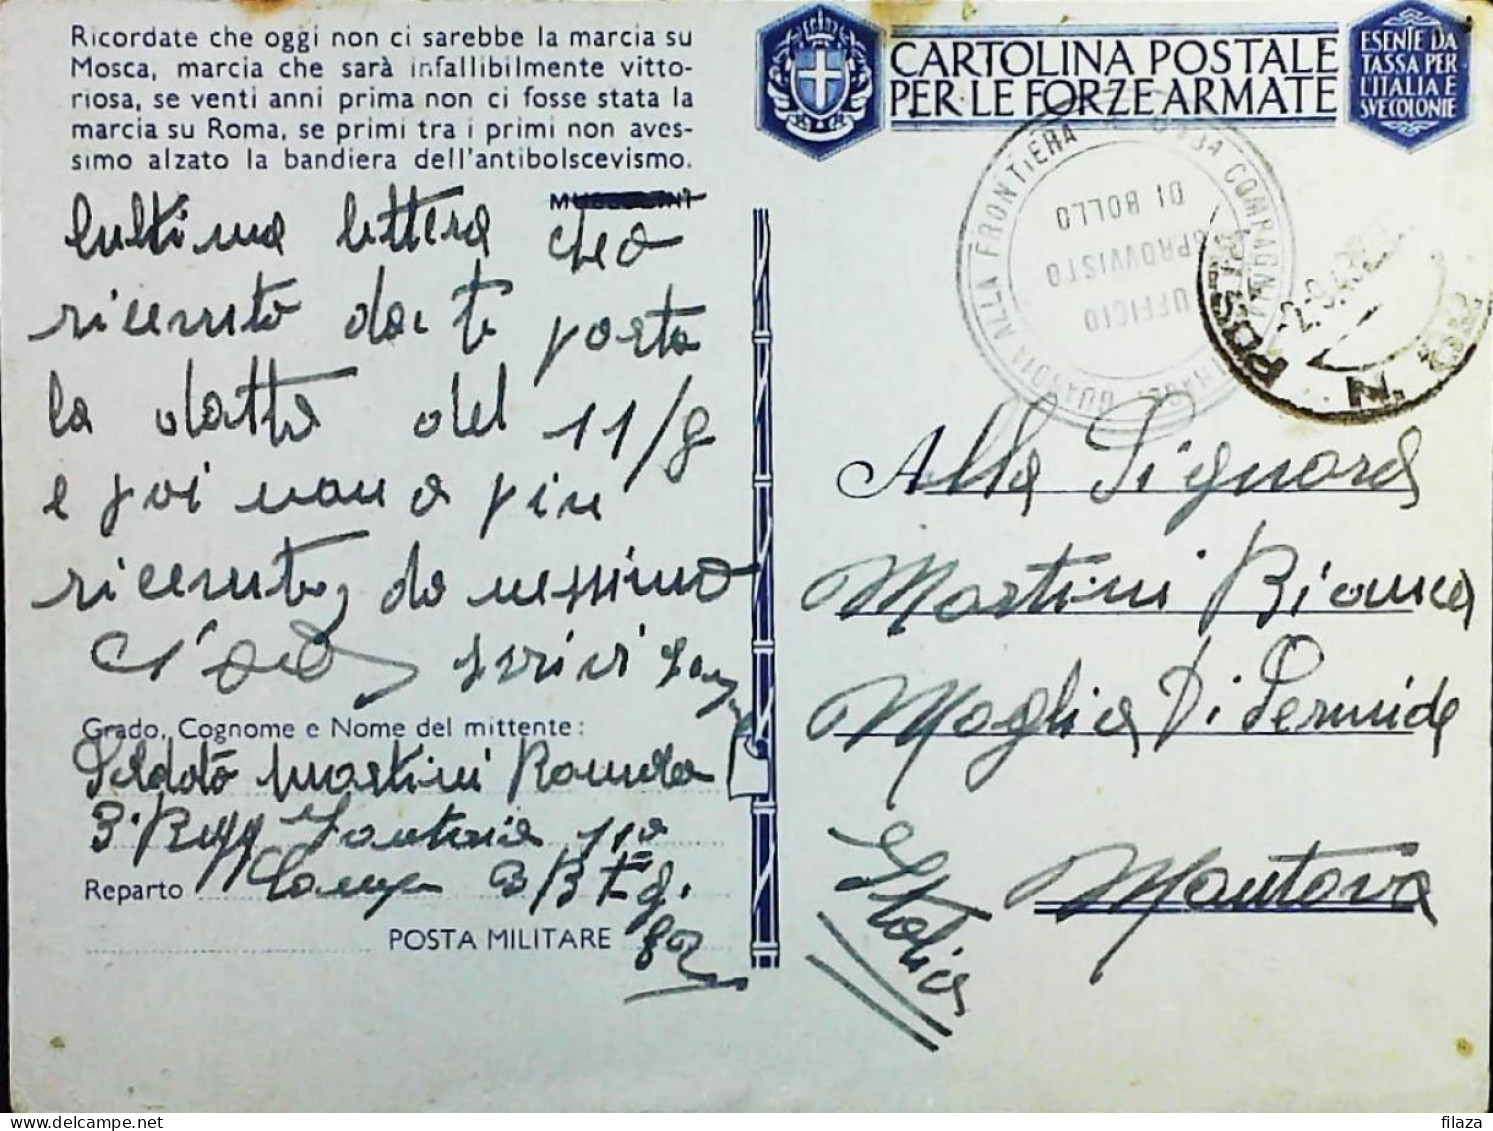 POSTA MILITARE ITALIA IN GRECIA  - WWII WW2 - S6864 - Military Mail (PM)